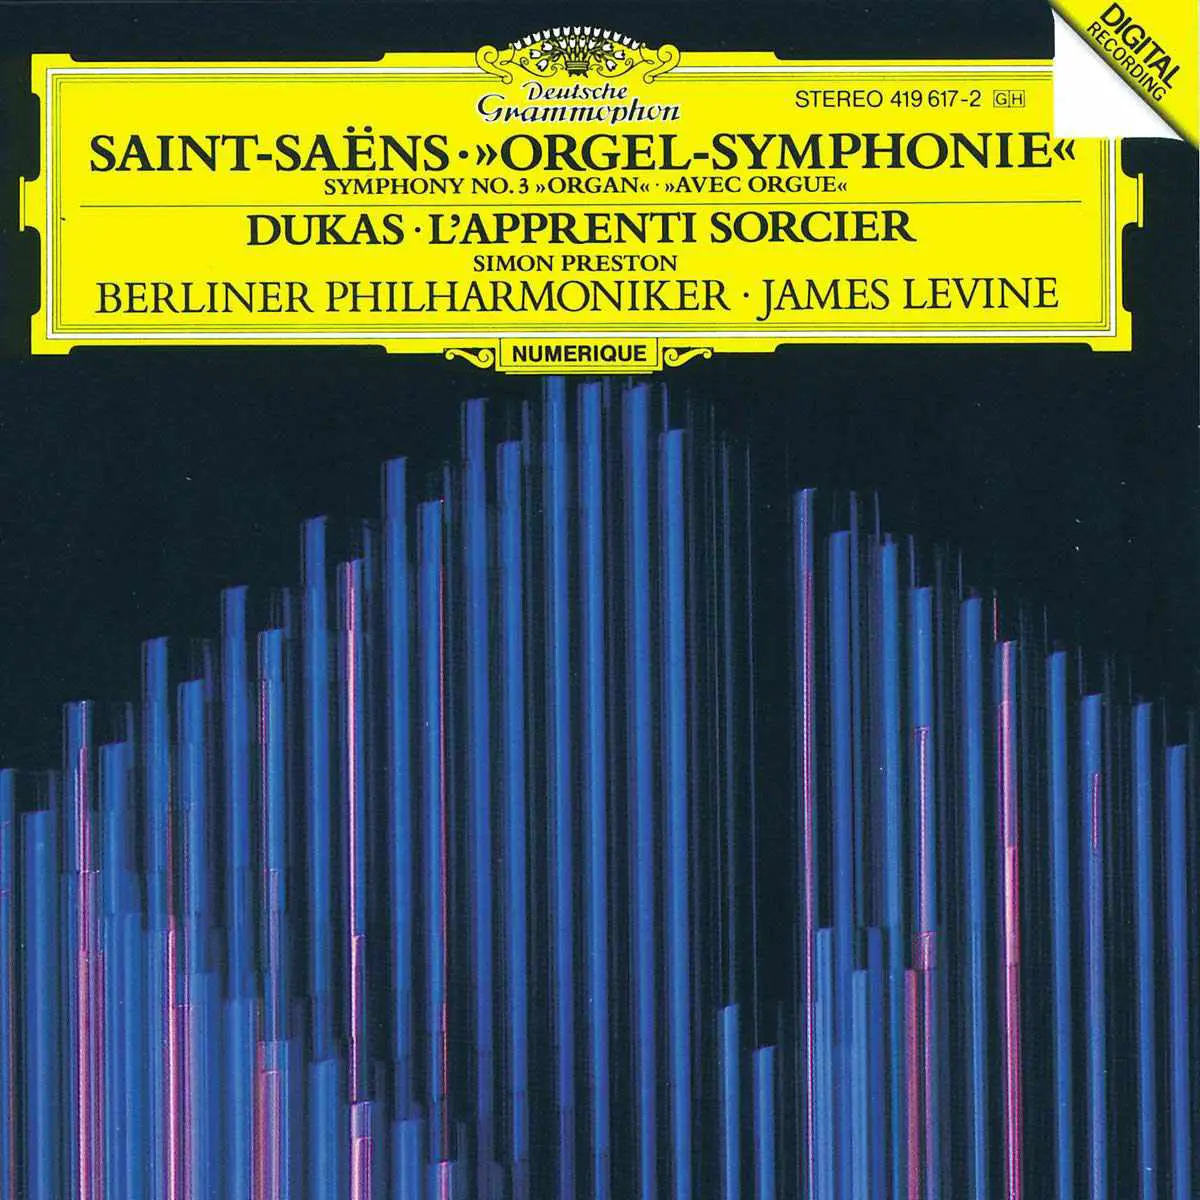 Saint-Saëns 'Symphony No. 3, capa do álbum' Organ Symphony '